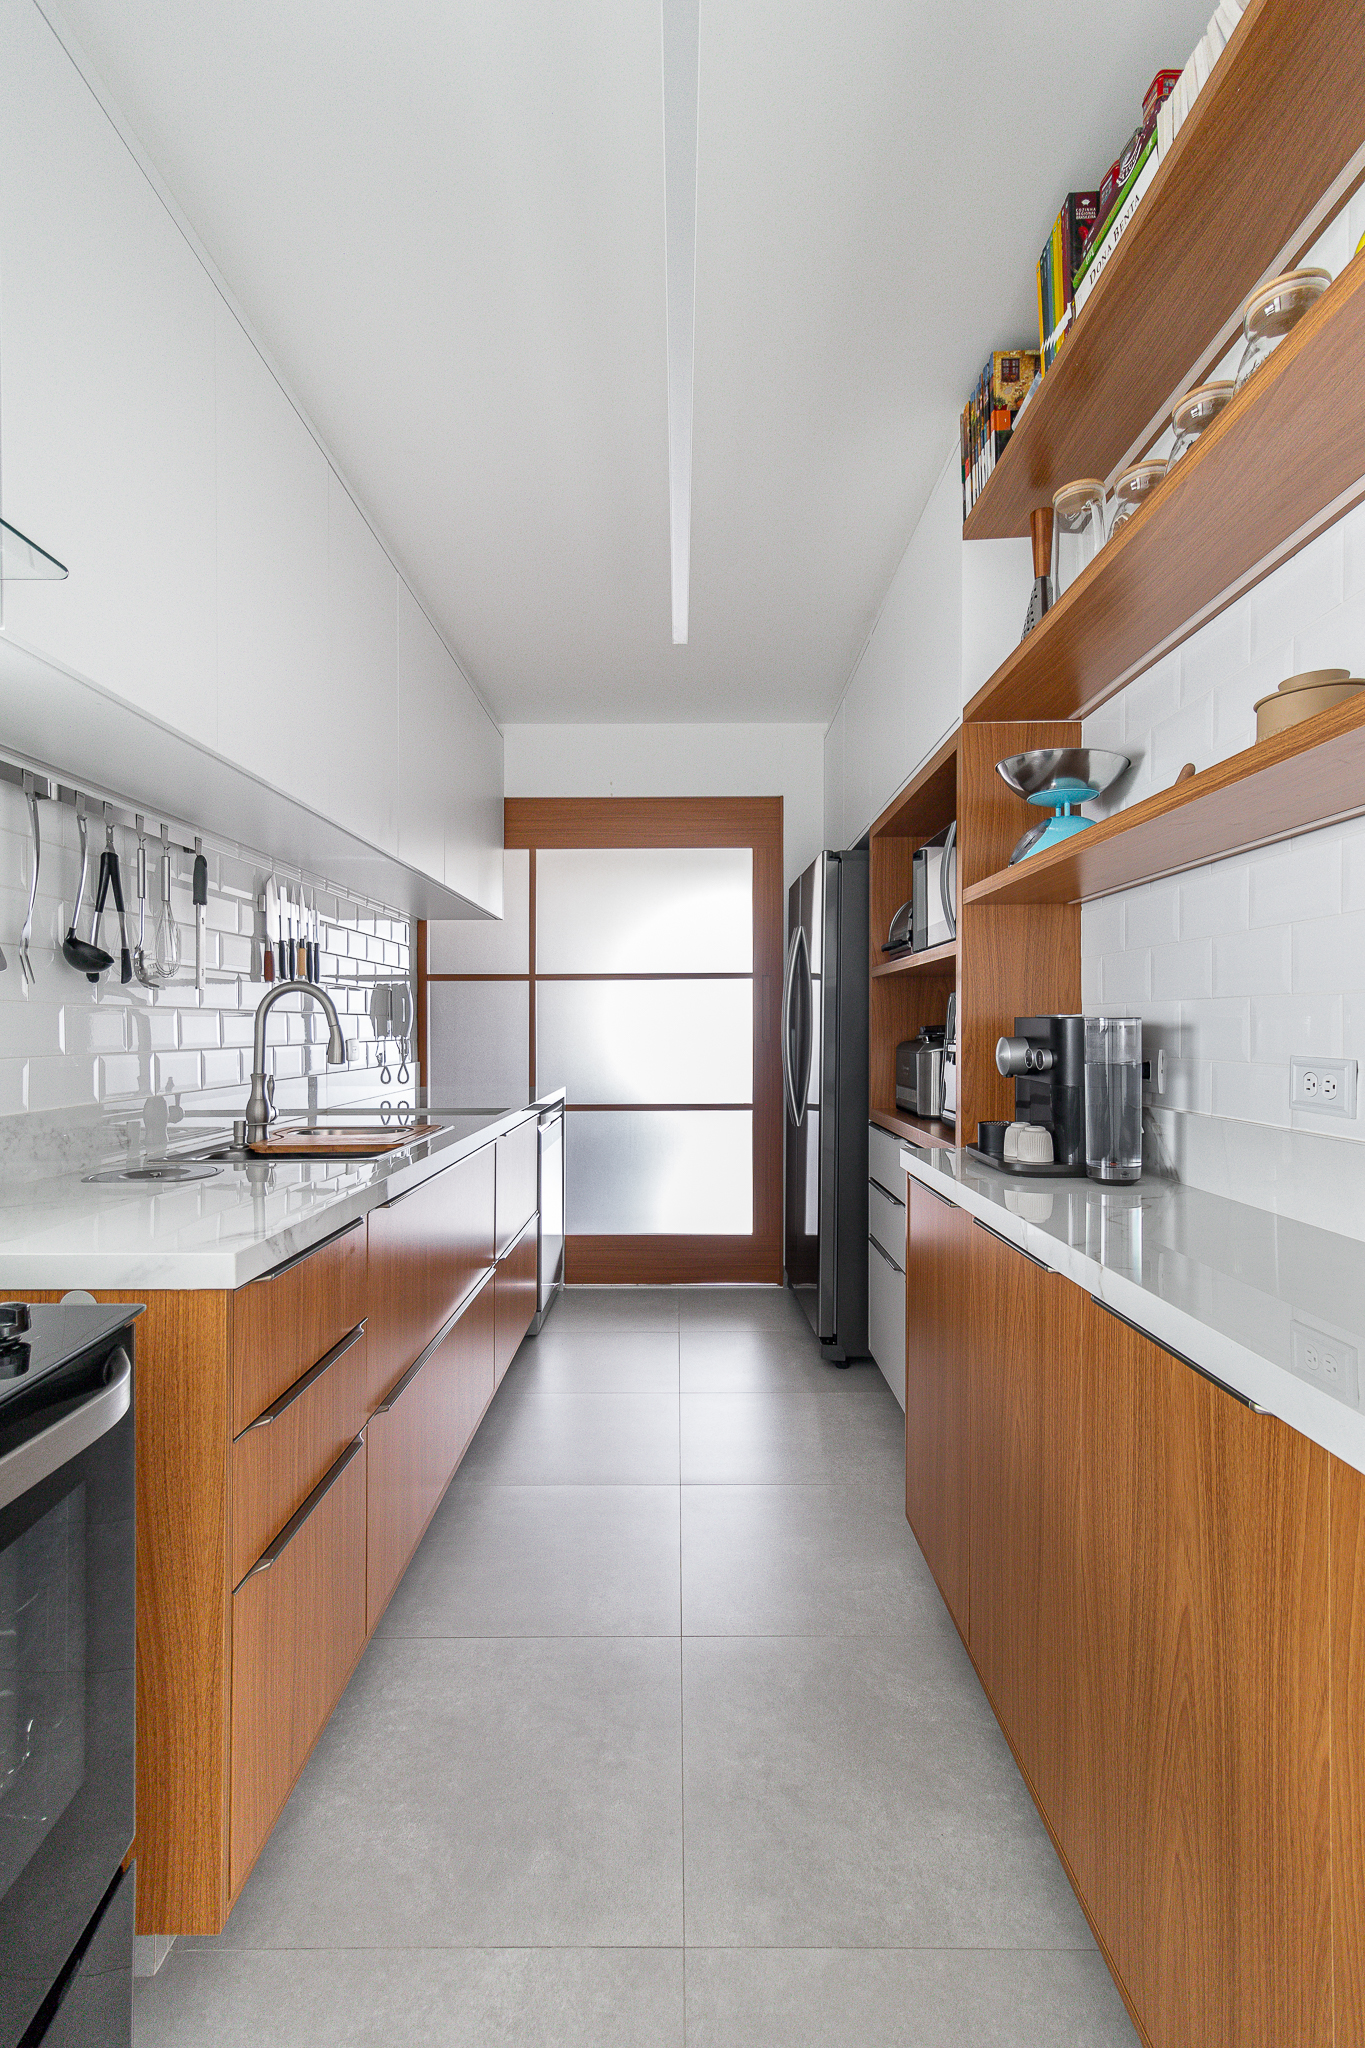 Cozinha minimalista foi pensada para abrigar muitos utensílios. Projeto de Inovando Arquitetura. Na foto, cozinha com piso de porcelanato, armários em madeira e bancada branca.